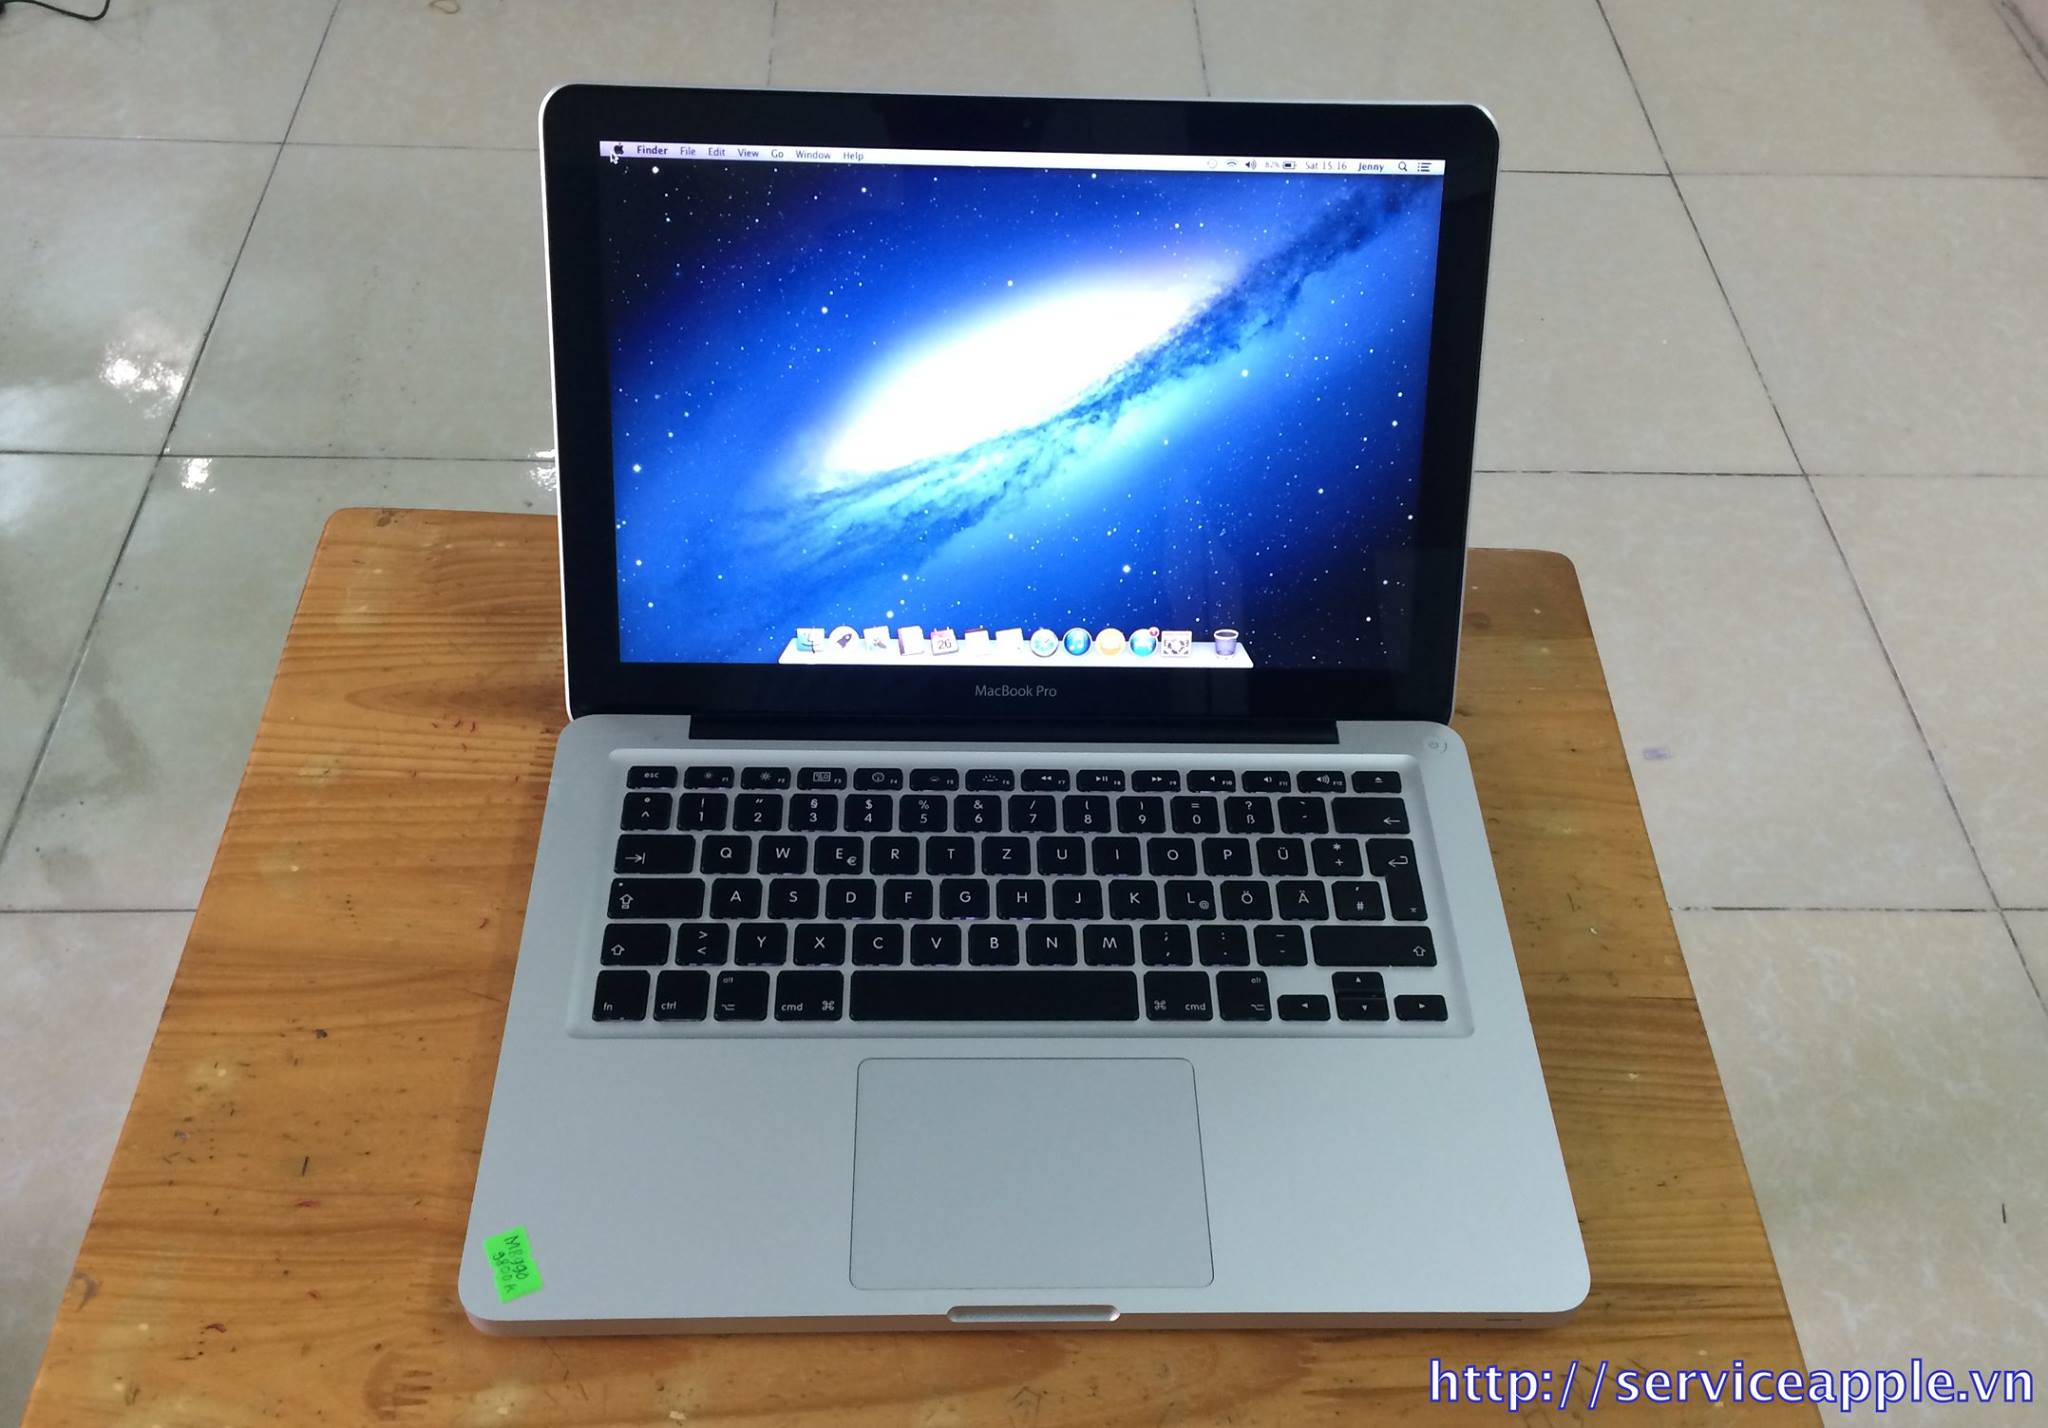 Macbook Pro MB990 Hàng Mỹ